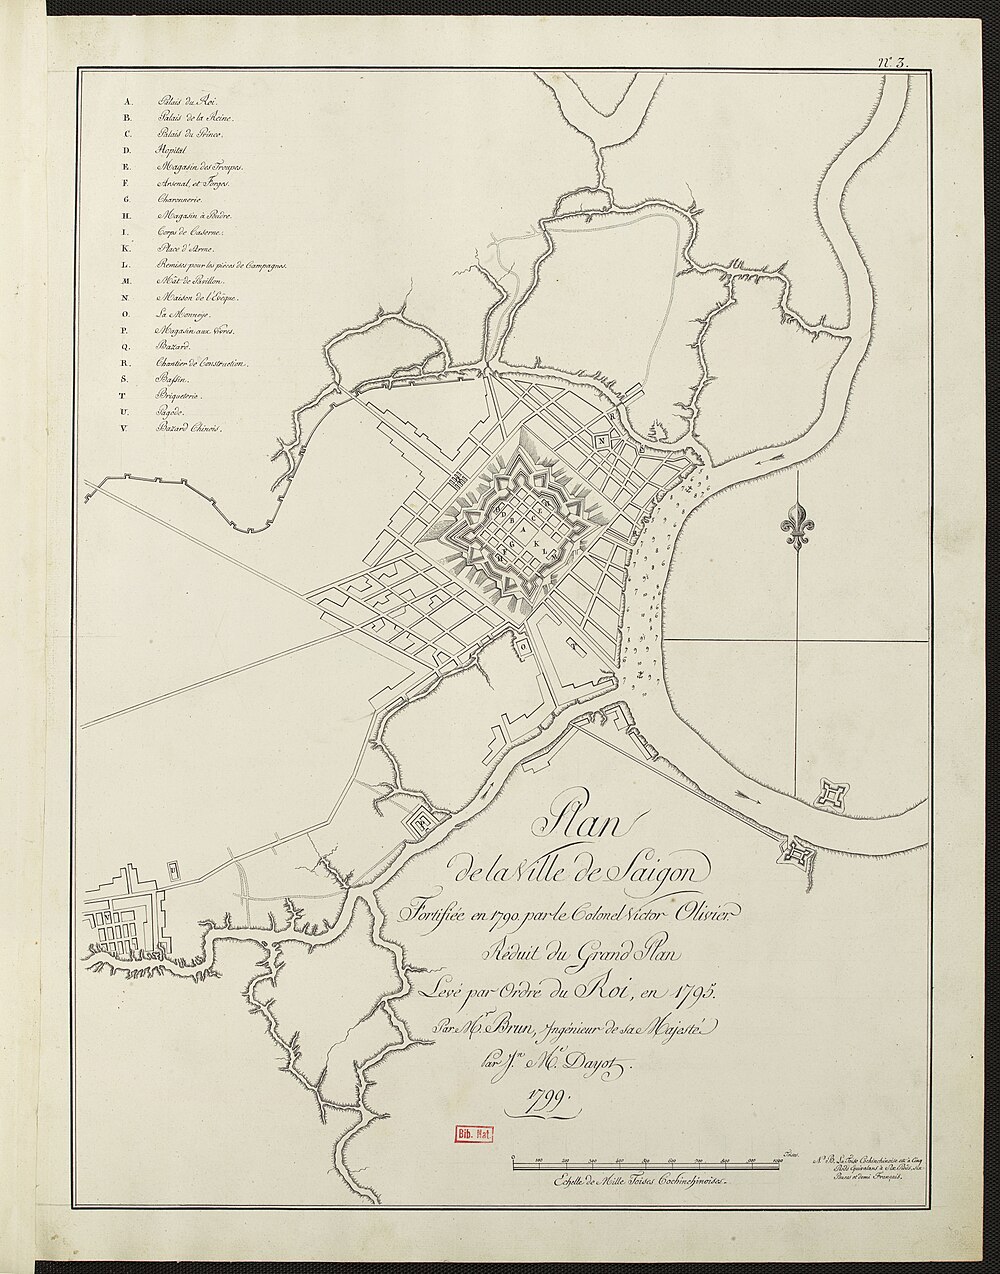 Bản đồ Sài Gòn năm 1795 thể hiện Kinh Lớn nối từ sông Sài Gòn vào thành Bát Quái